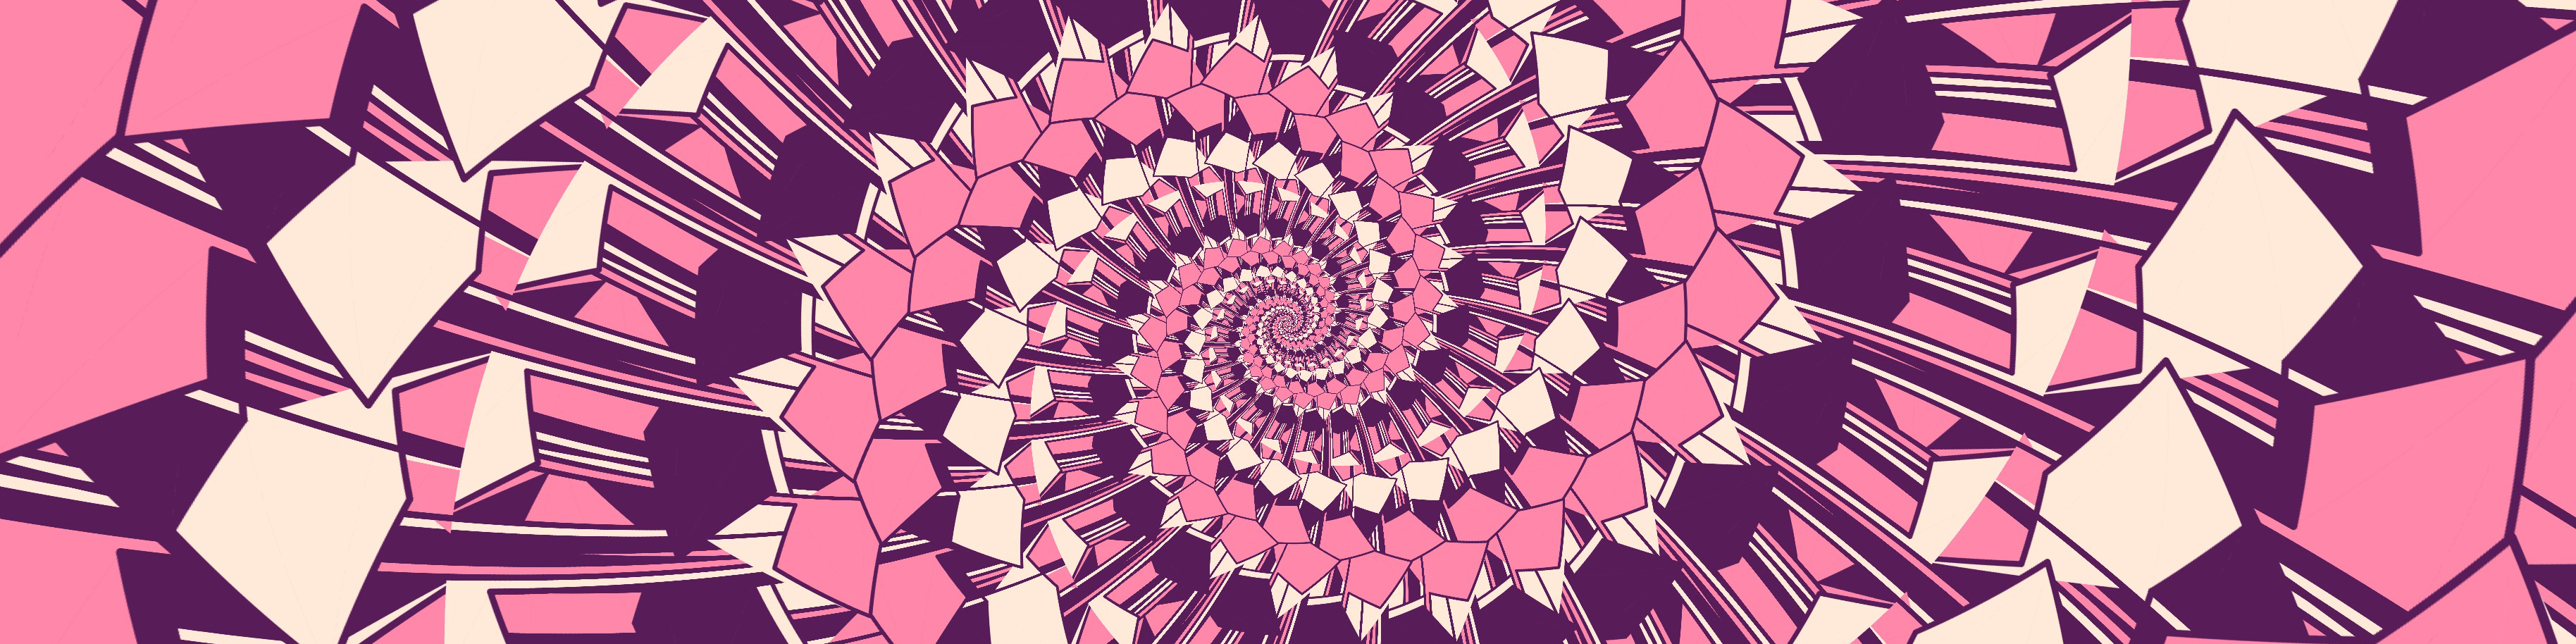 Inspirals by Radix